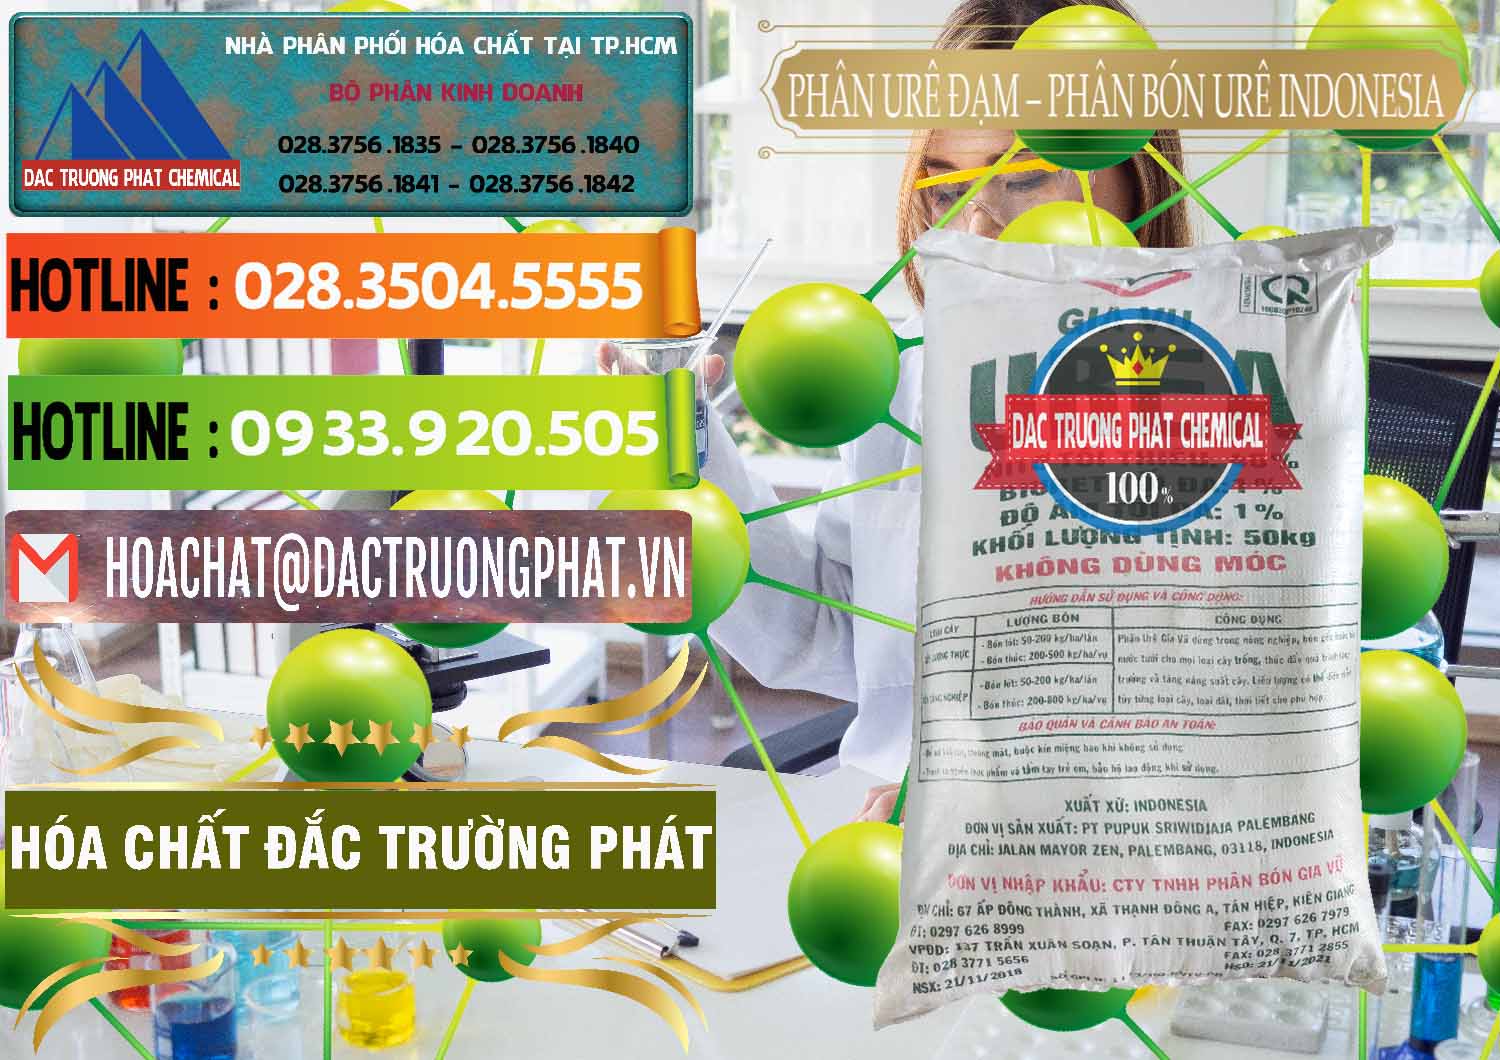 Phân phối & bán Phân Urê Đạm – Phân Bón Urê Indonesia - 0194 - Nhà phân phối - nhập khẩu hóa chất tại TP.HCM - cungcaphoachat.com.vn